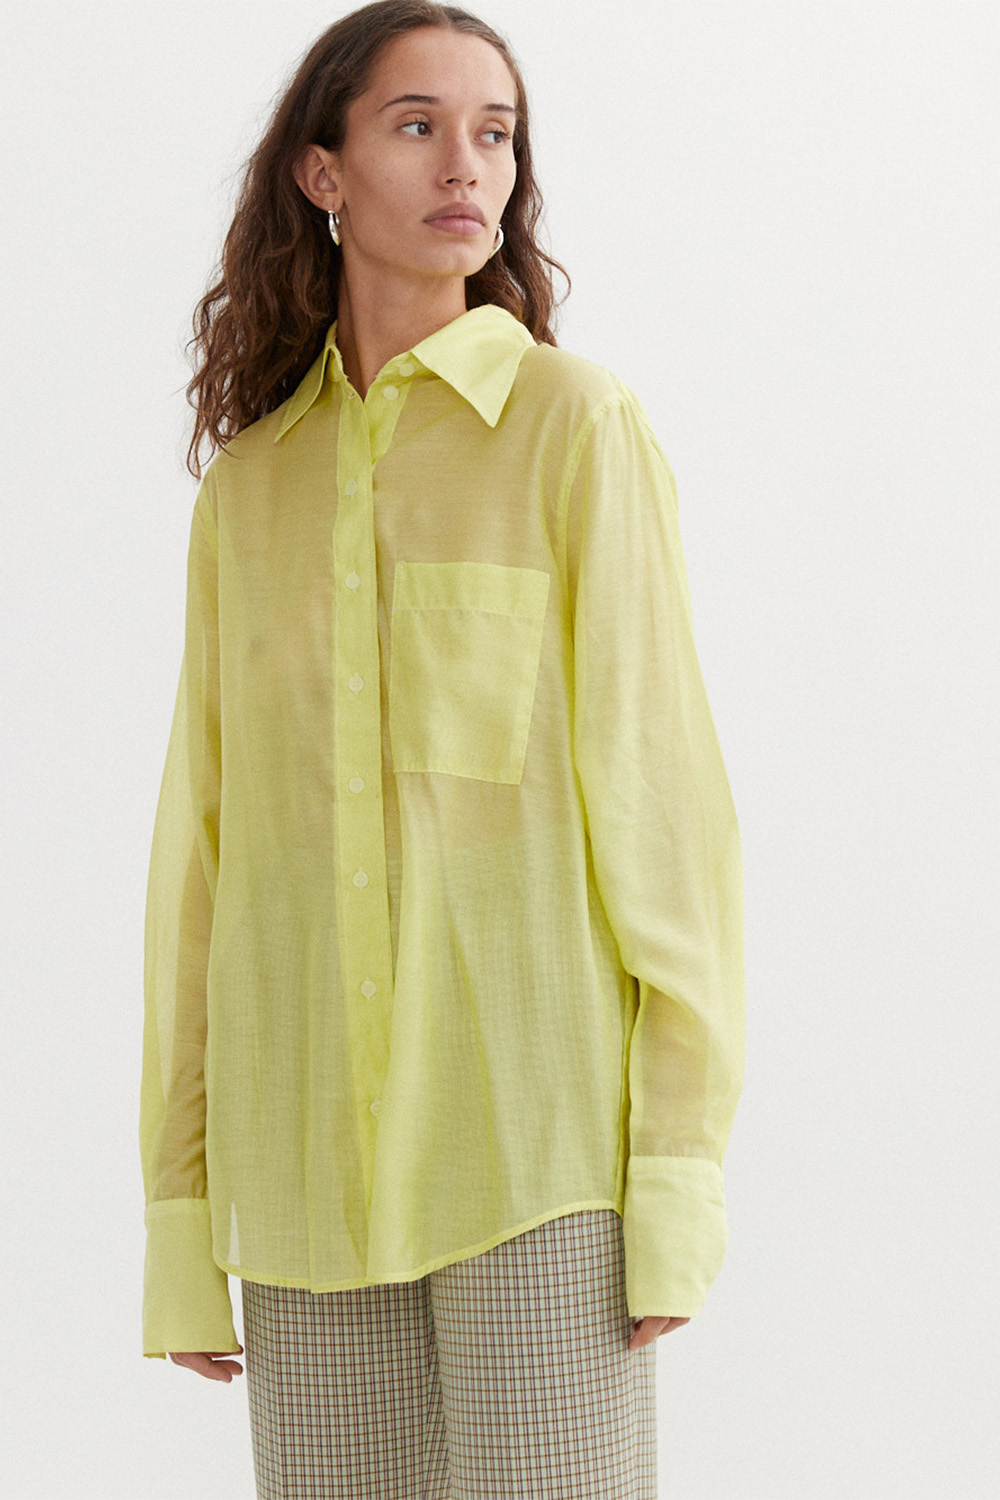 Leonie Shirt in Lemon by BLANCA